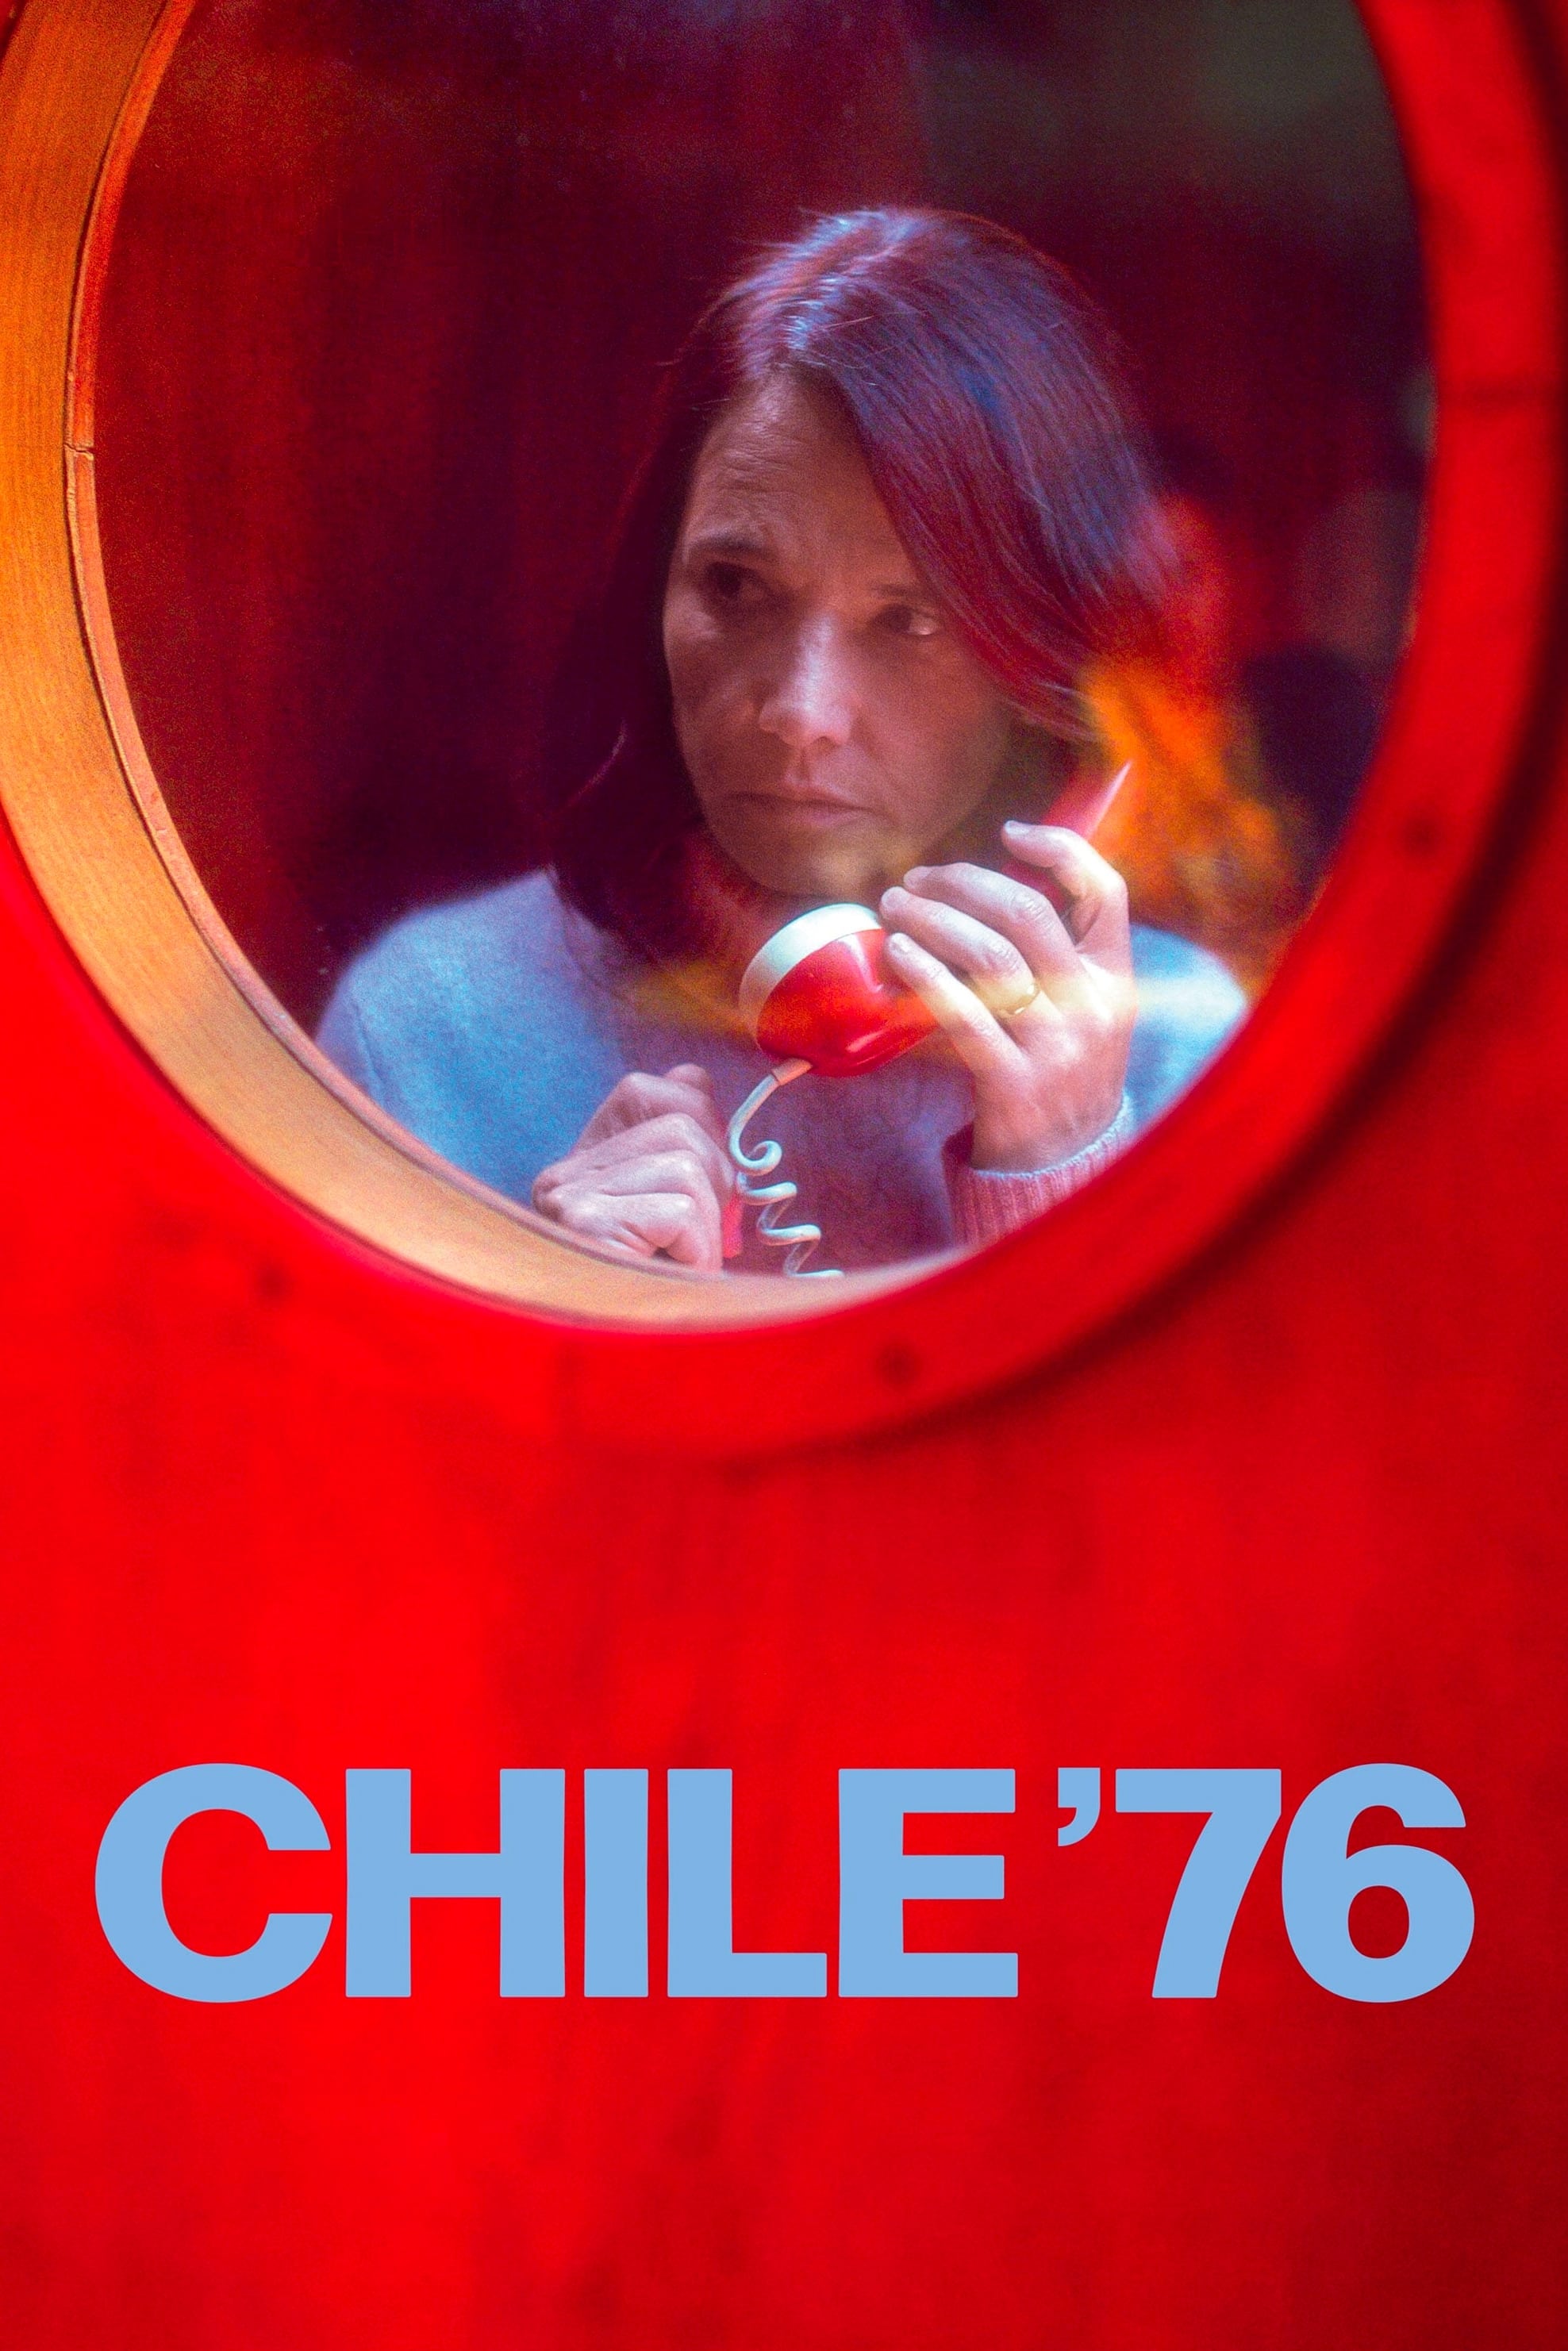 Chile '76